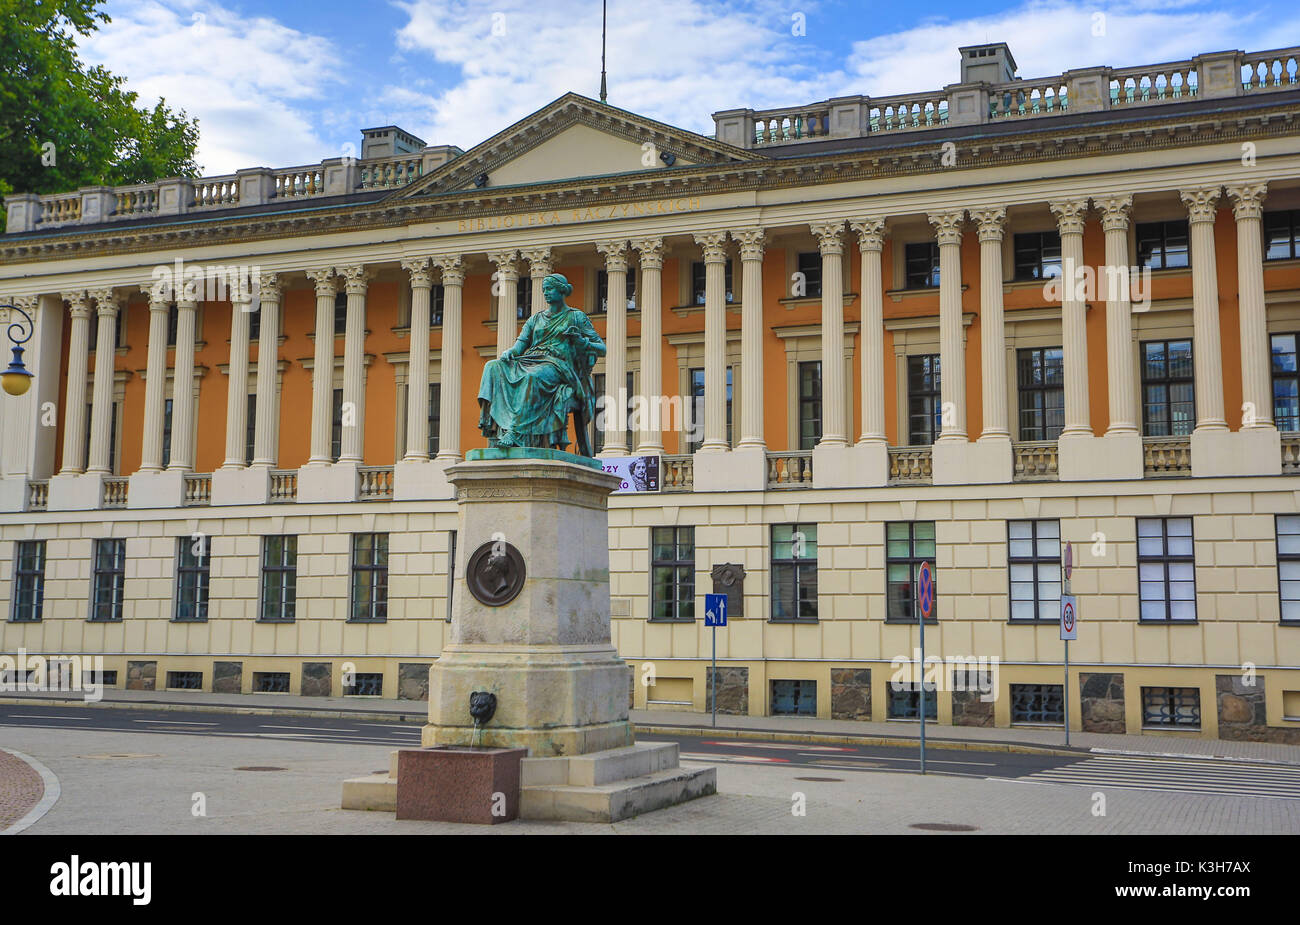 Polonia, de la ciudad de Poznan, Biblioteca Pública Hygeia Building, la Estatua de la diosa griega de la salud. Foto de stock